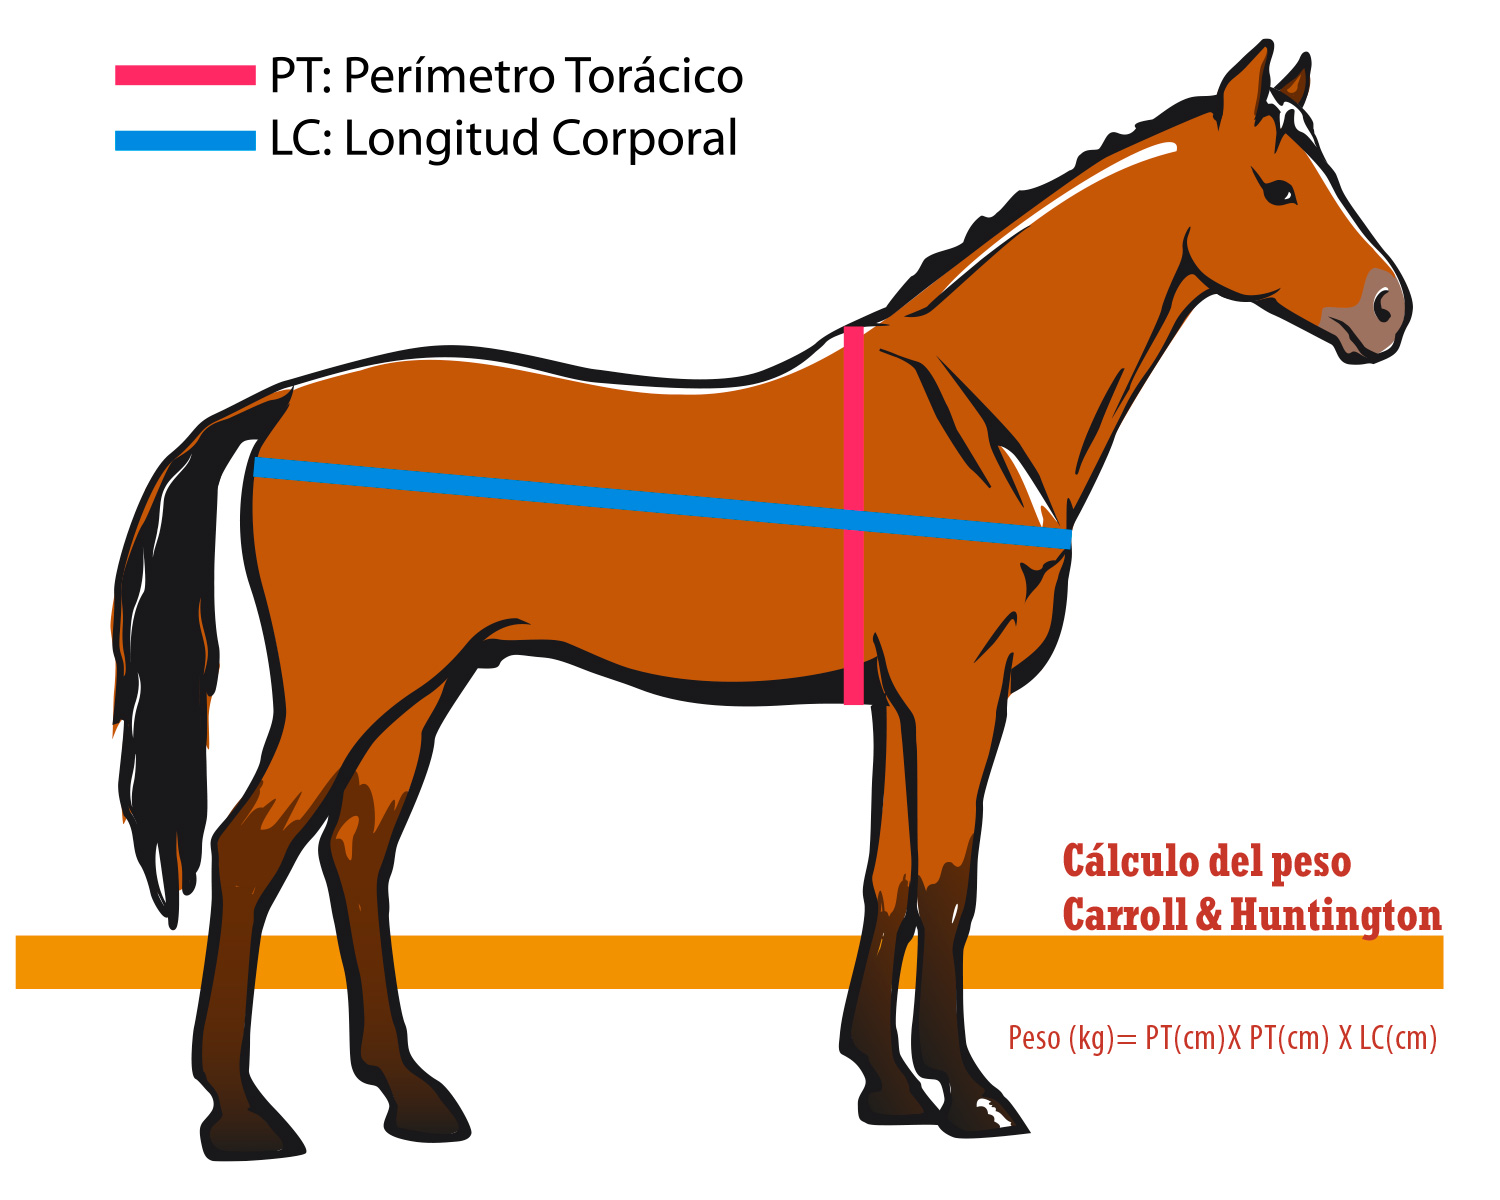 Imagen del cálculo del peso del caballo aproximado midiendo la longitud del cuerpo y el perímetro torácico (Carroll & Huntington, 1988)